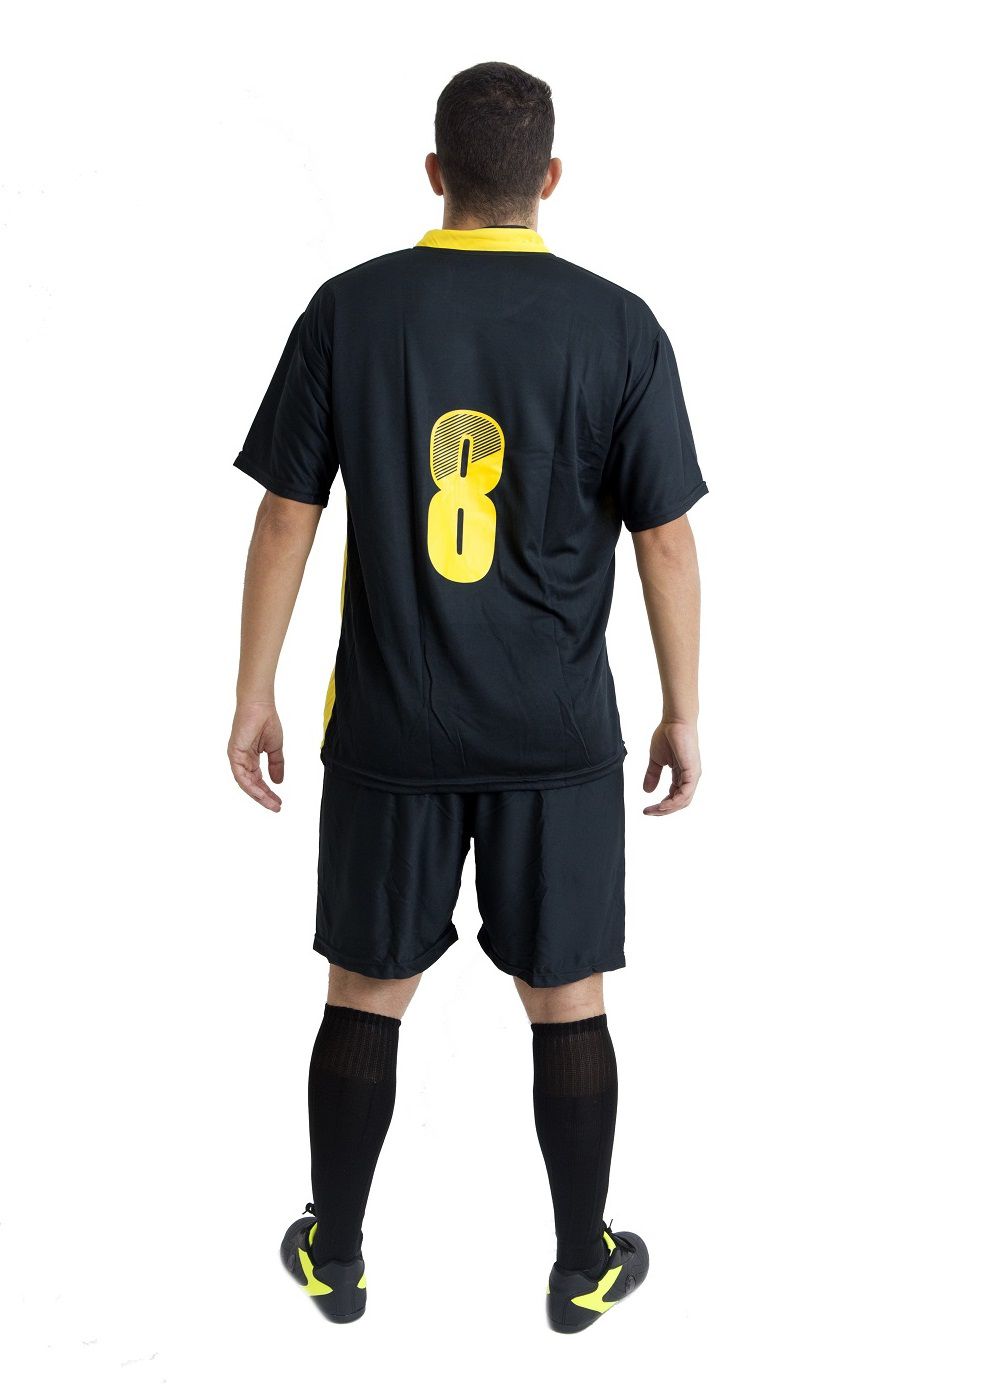 Uniforme Esportivo Completo modelo Suécia 14+1 (14 camisas Preto/Amarelo + 14 calções Madrid Preto + 14 pares de meiões Preto + 1 conjunto de goleiro) + Brindes